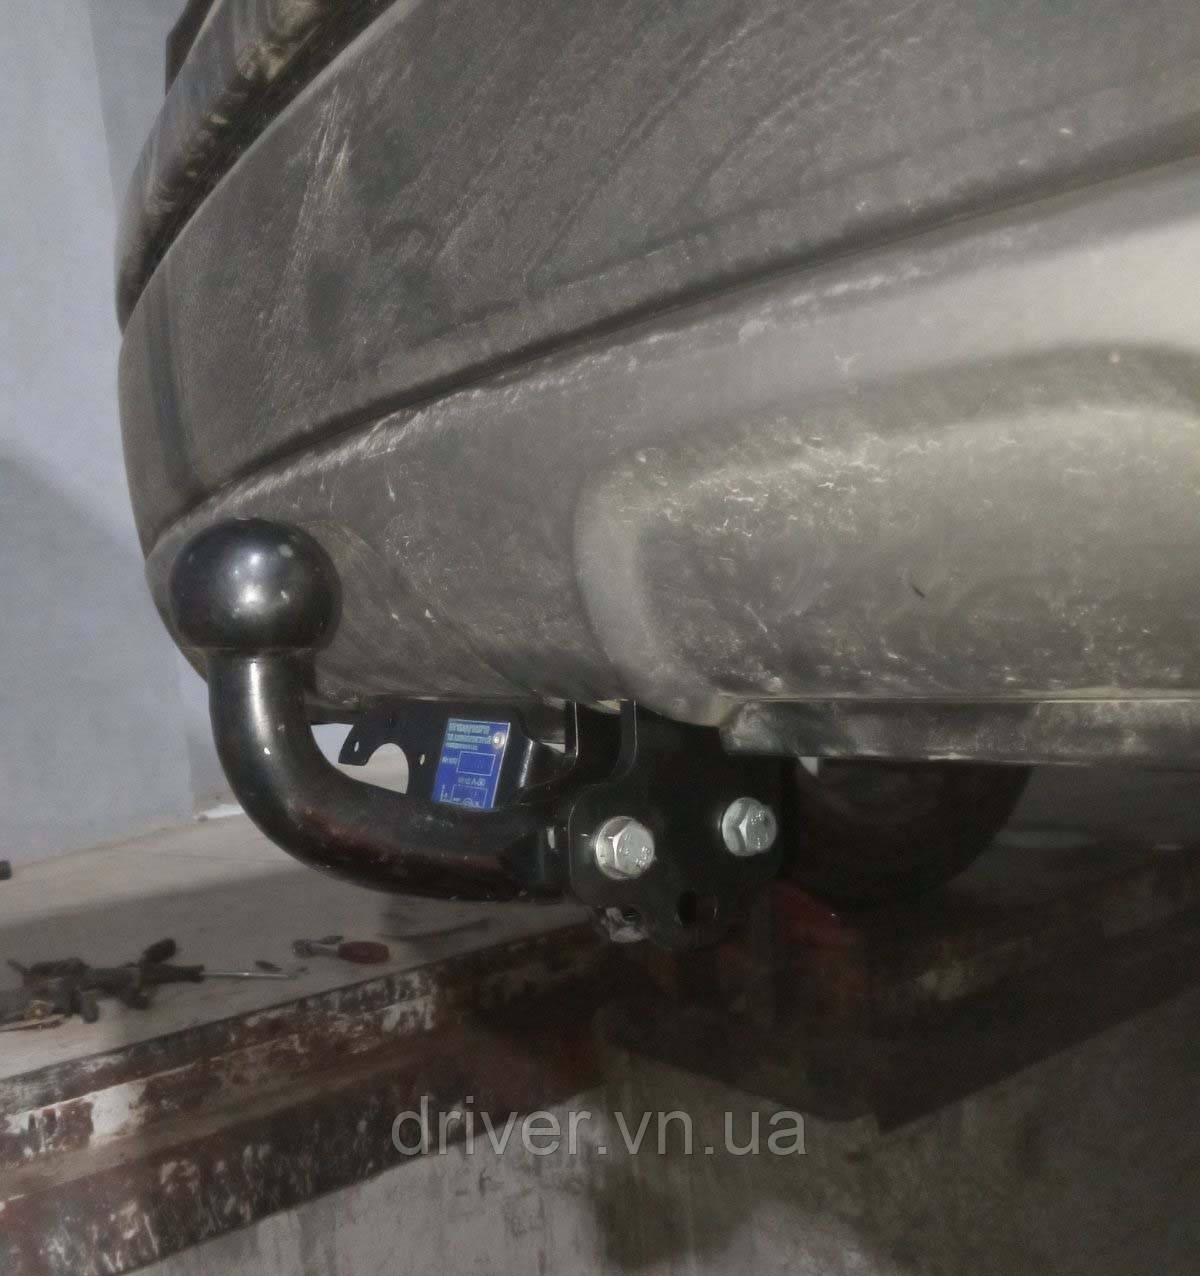 Фаркоп Hyundai Santa Fe 3, 2012-2018 (+ електропакет), гак знімається